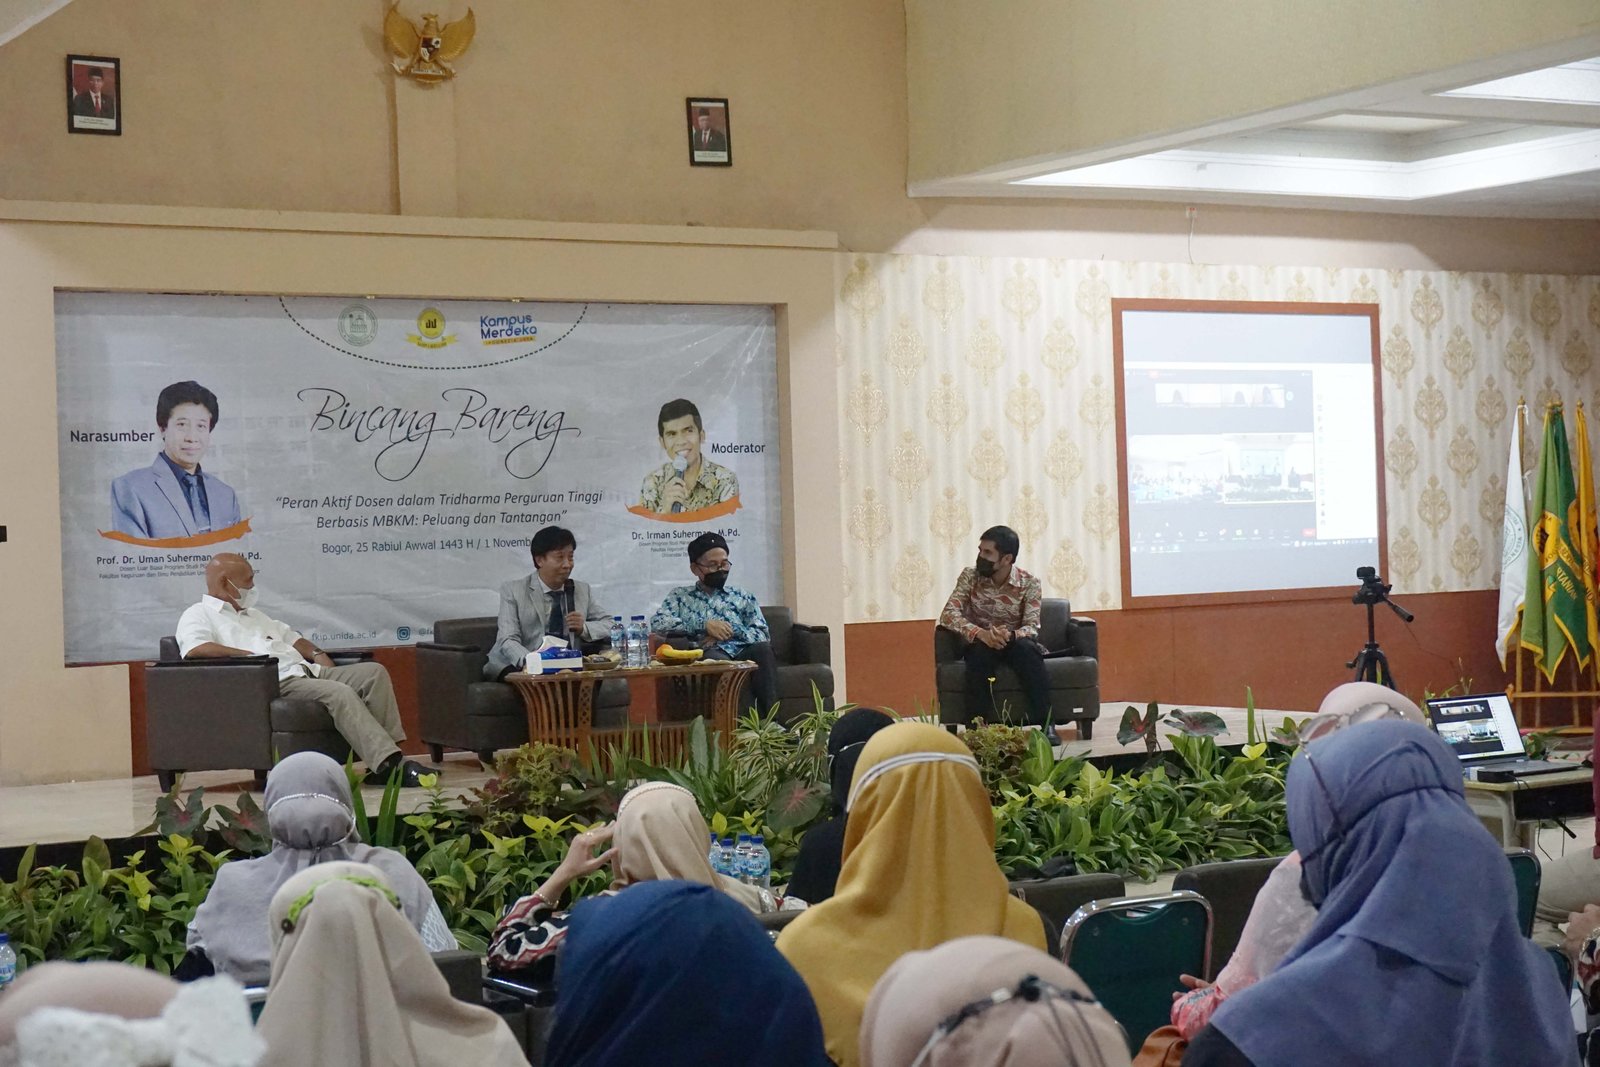 FKIP UNIDA Bogor Adakan Bincang Bareng, Sambut Prof. Dr. Uman Suherman AS, M.Pd